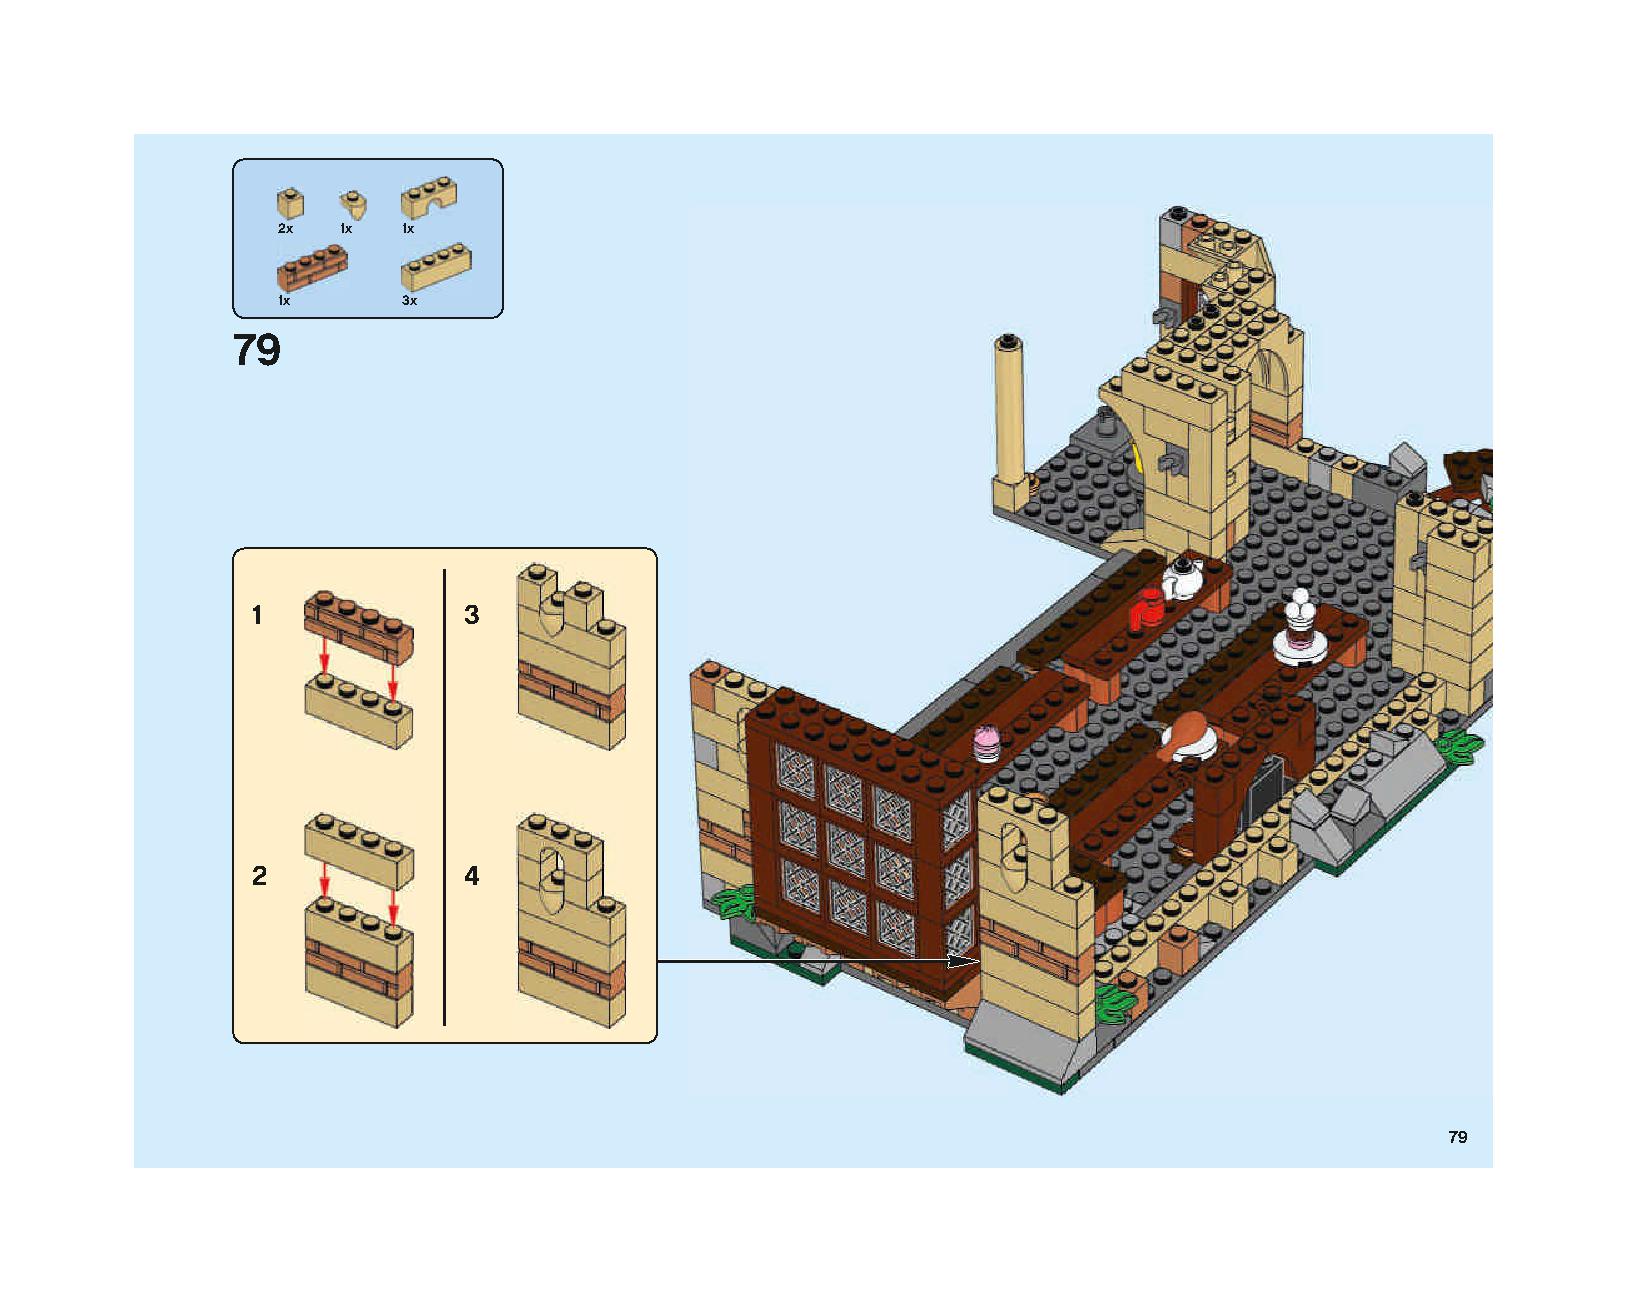 ホグワーツの大広間 75954 レゴの商品情報 レゴの説明書・組立方法 79 page